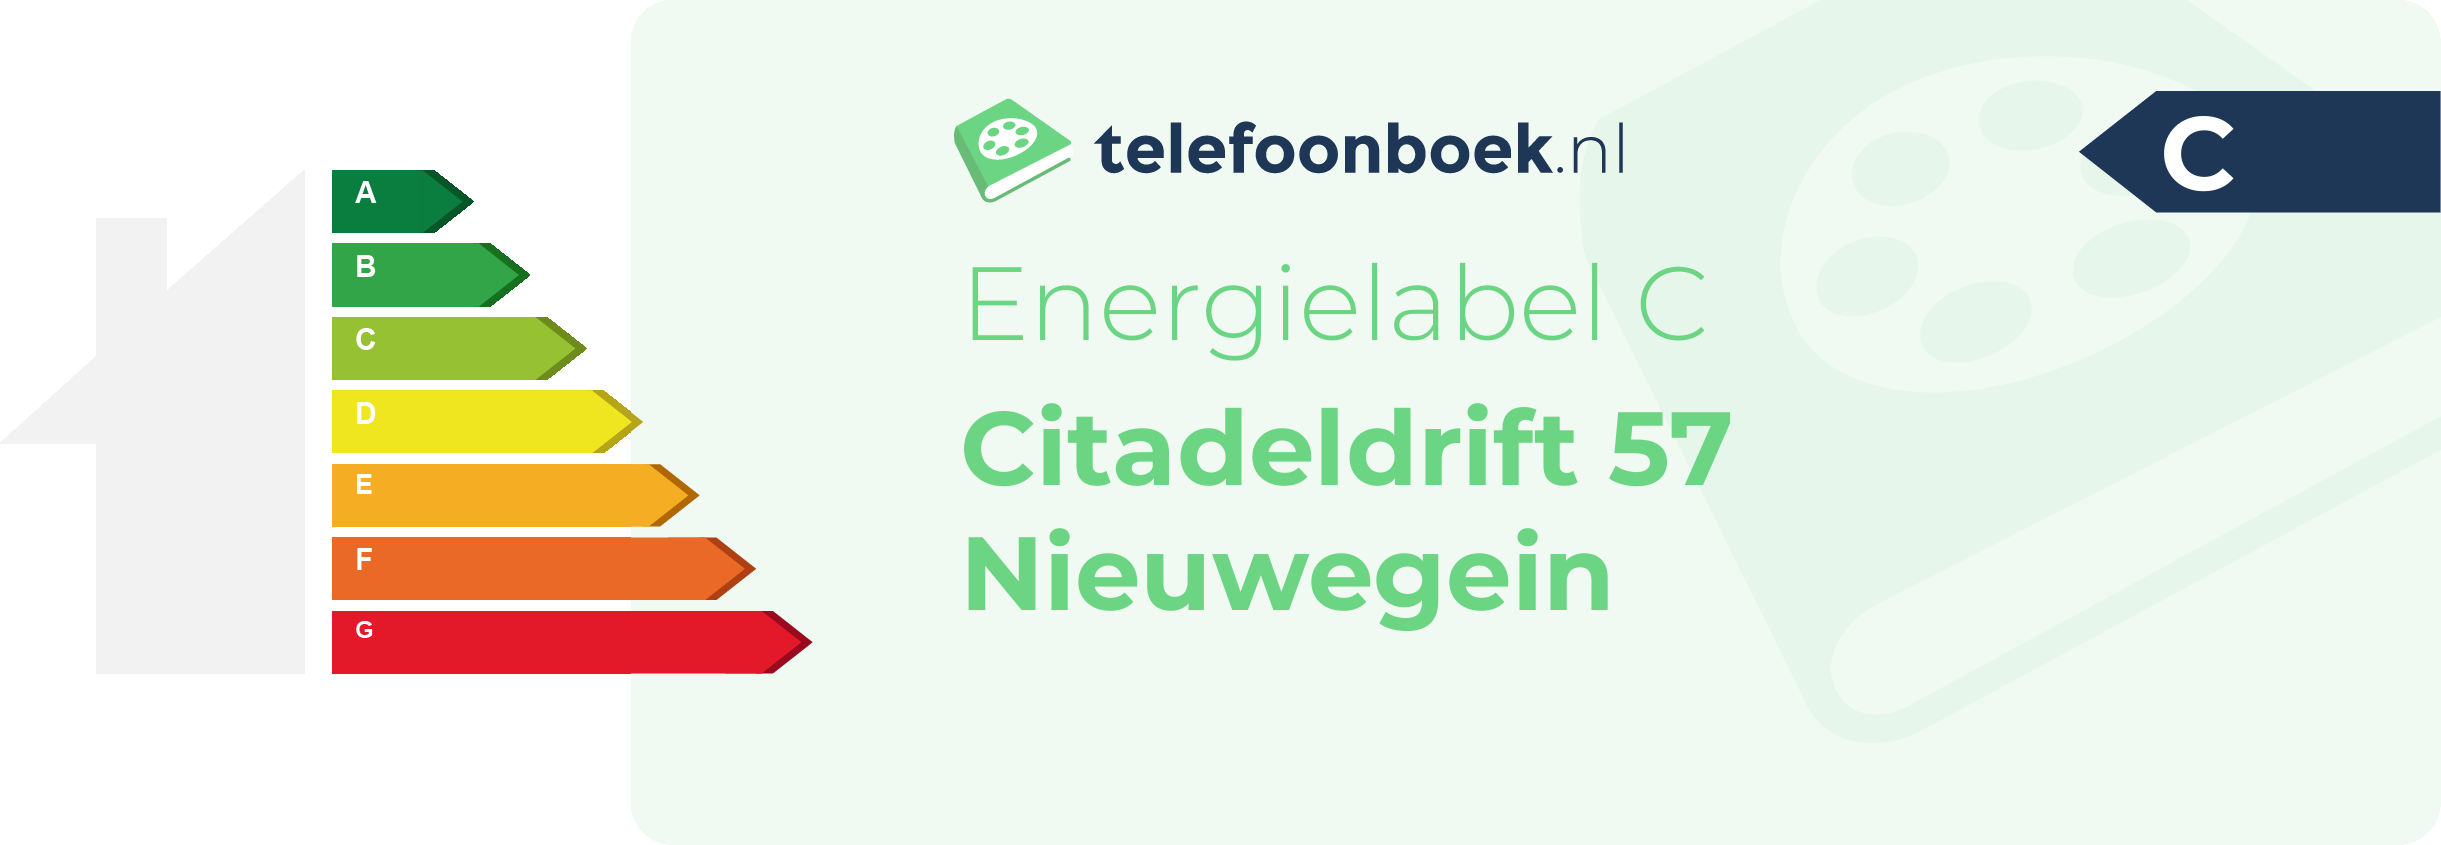 Energielabel Citadeldrift 57 Nieuwegein